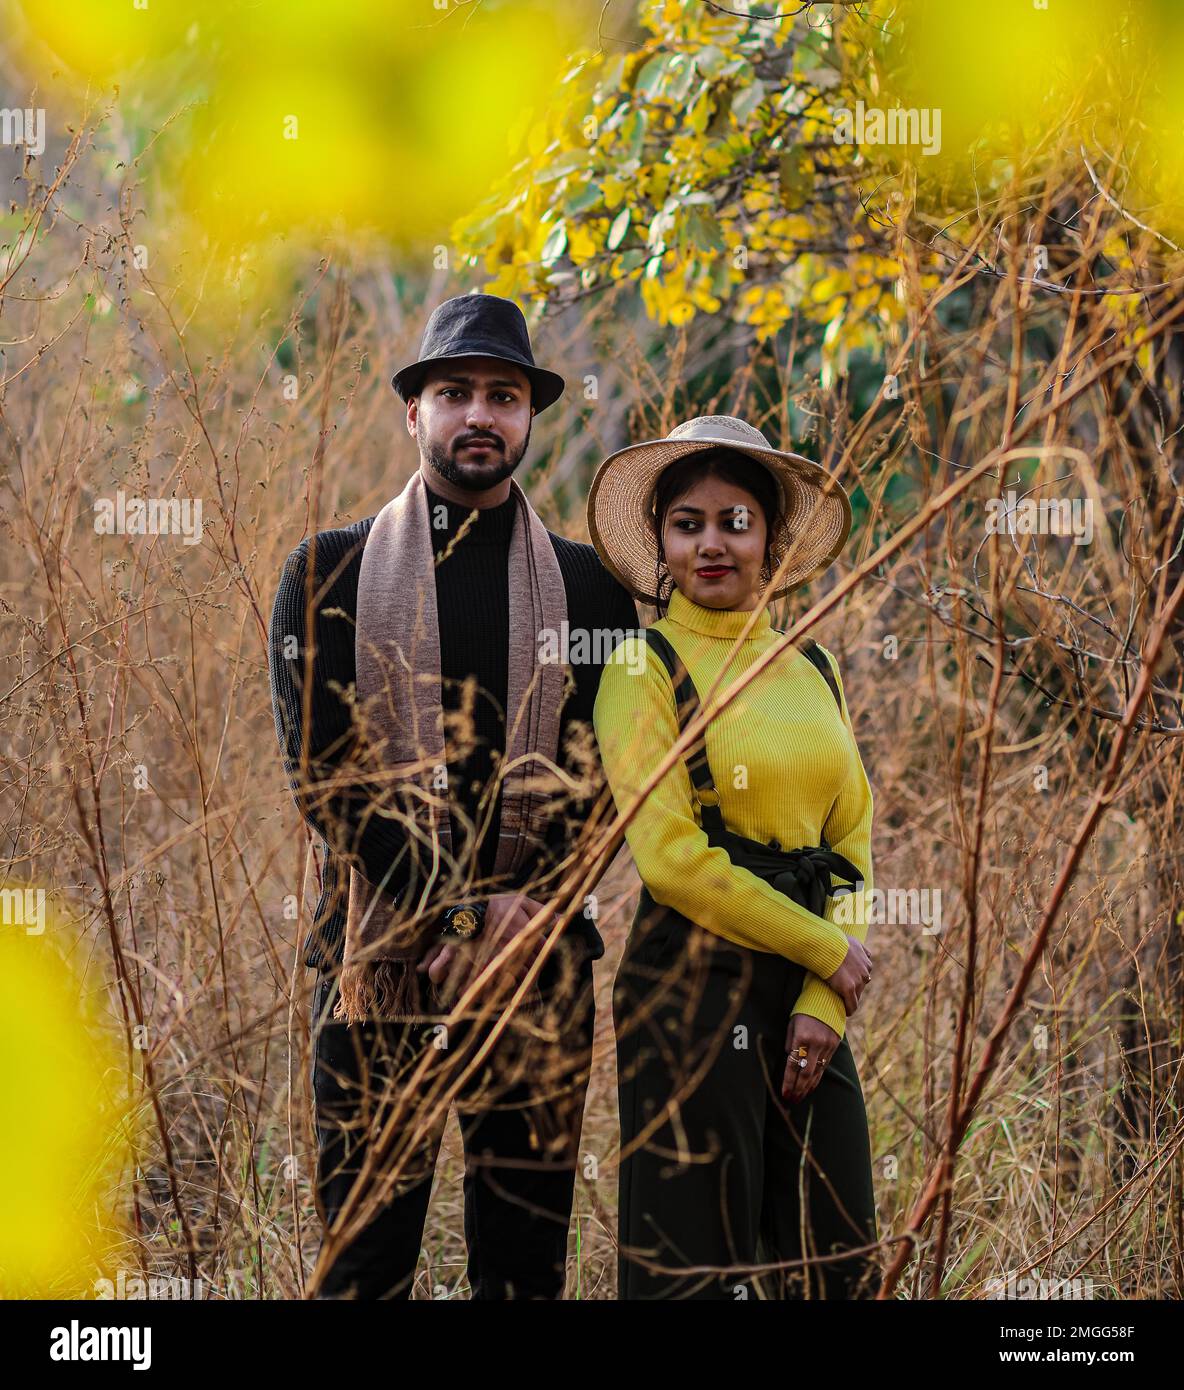 Vor der Hochzeit wurde ein indianisches Paar auf dem Weg der Natur in Delhi, Indien, gedreht. Romantisches Paar Shoot. Braut und Bräutigam im natürlichen Wald mit Bäumen. Stockfoto